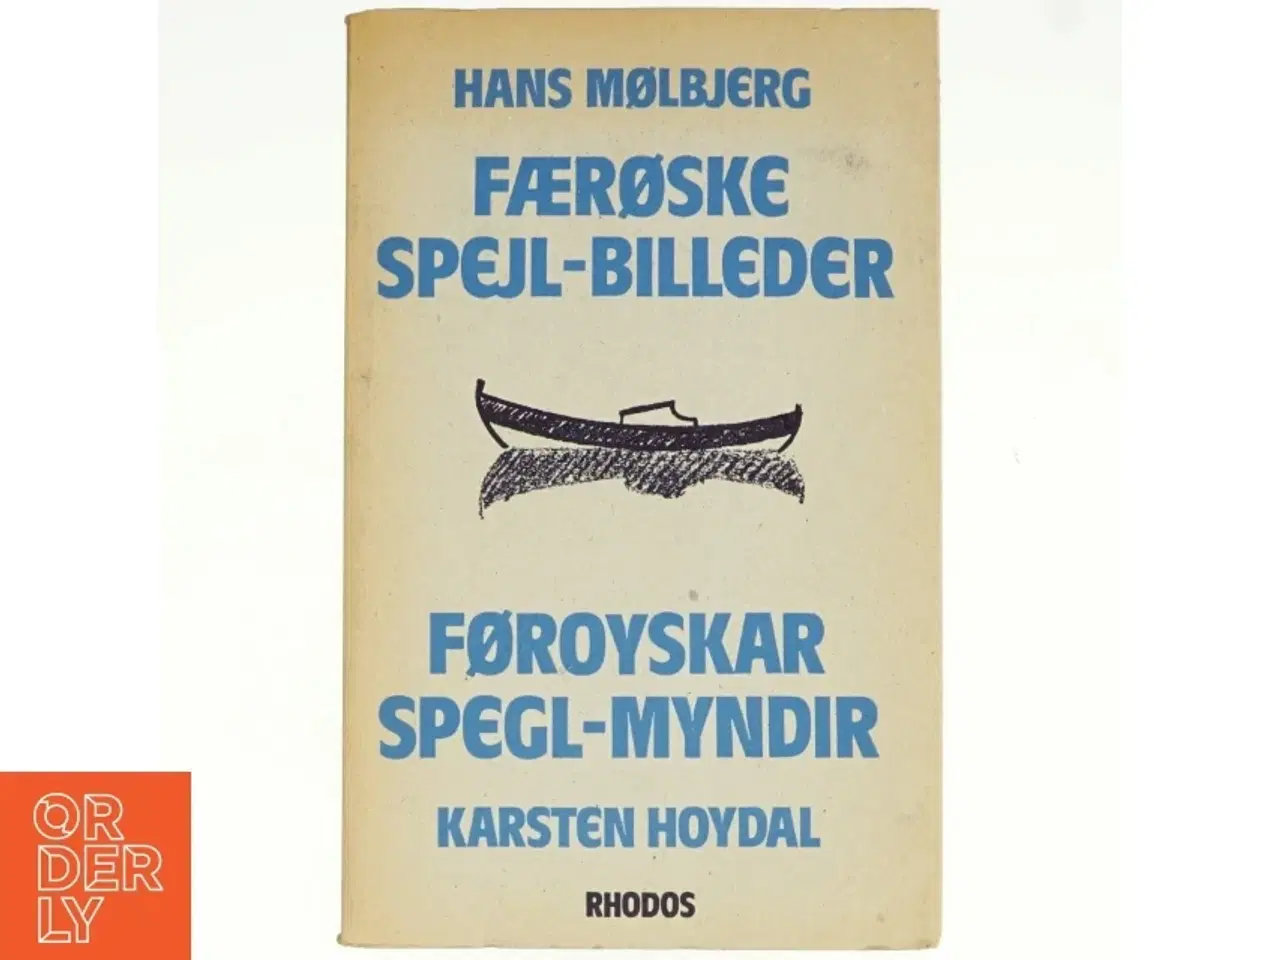 Billede 1 - Færøske spejl-billeder / Færoyskar spegl-myndir af Hans Mølbjerg og Karsten Hoydal (Bog)